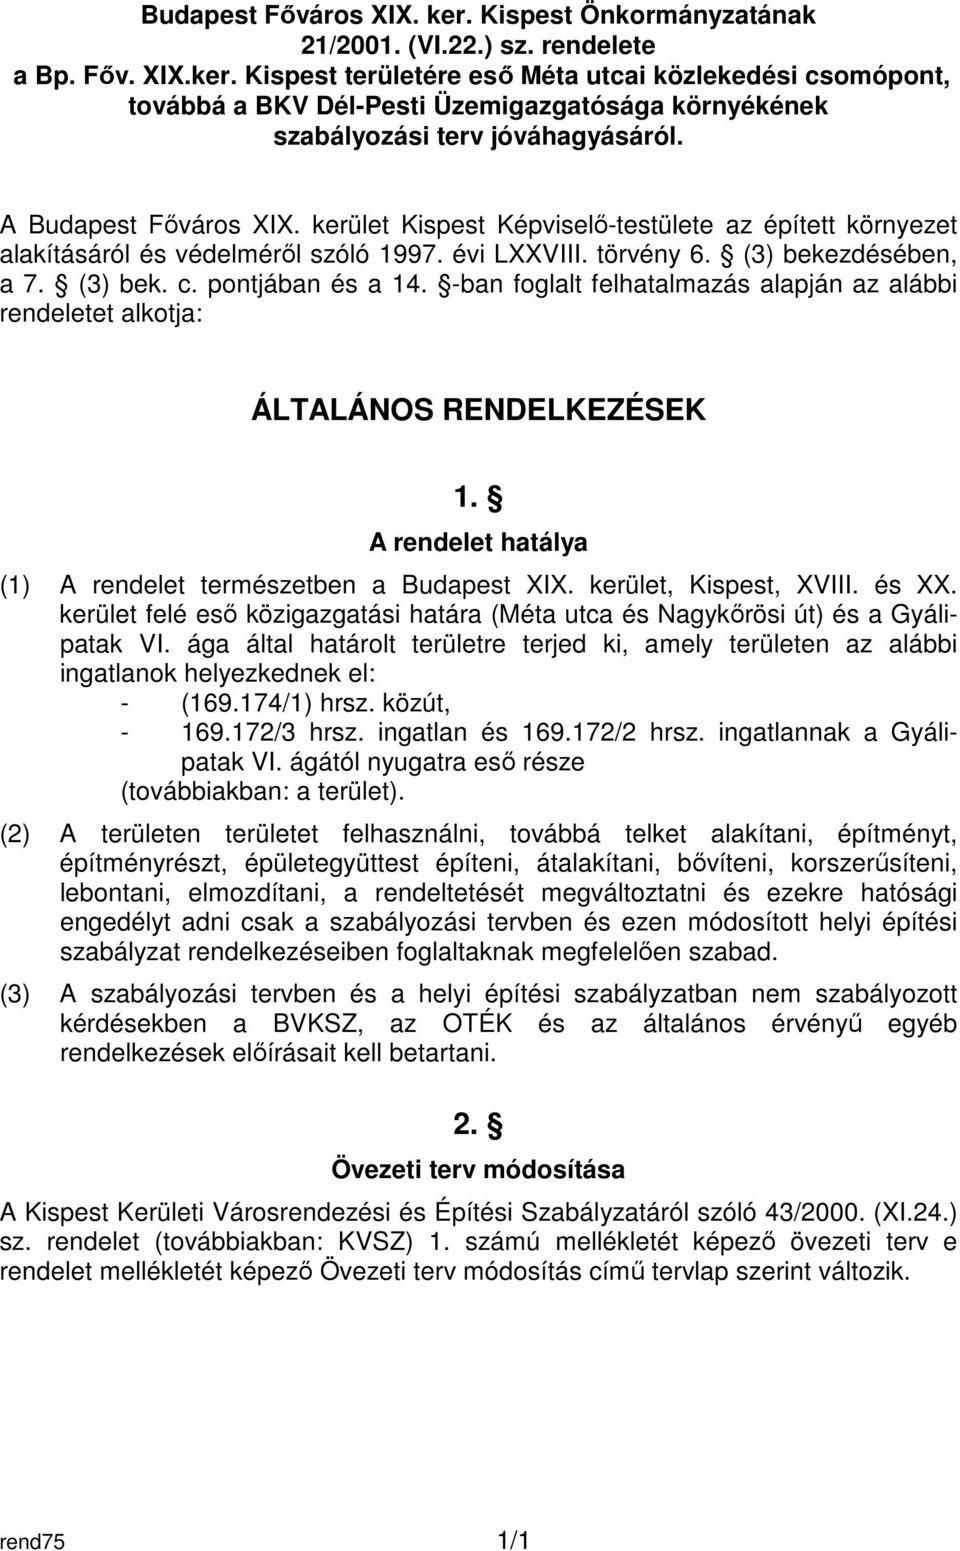 -ban foglalt felhatalmazás alapján az alábbi rendeletet alkotja: ÁLTALÁNOS RENDELKEZÉSEK 1. A rendelet hatálya (1) A rendelet természetben a Budapest XIX. kerület, Kispest, XVIII. és XX.